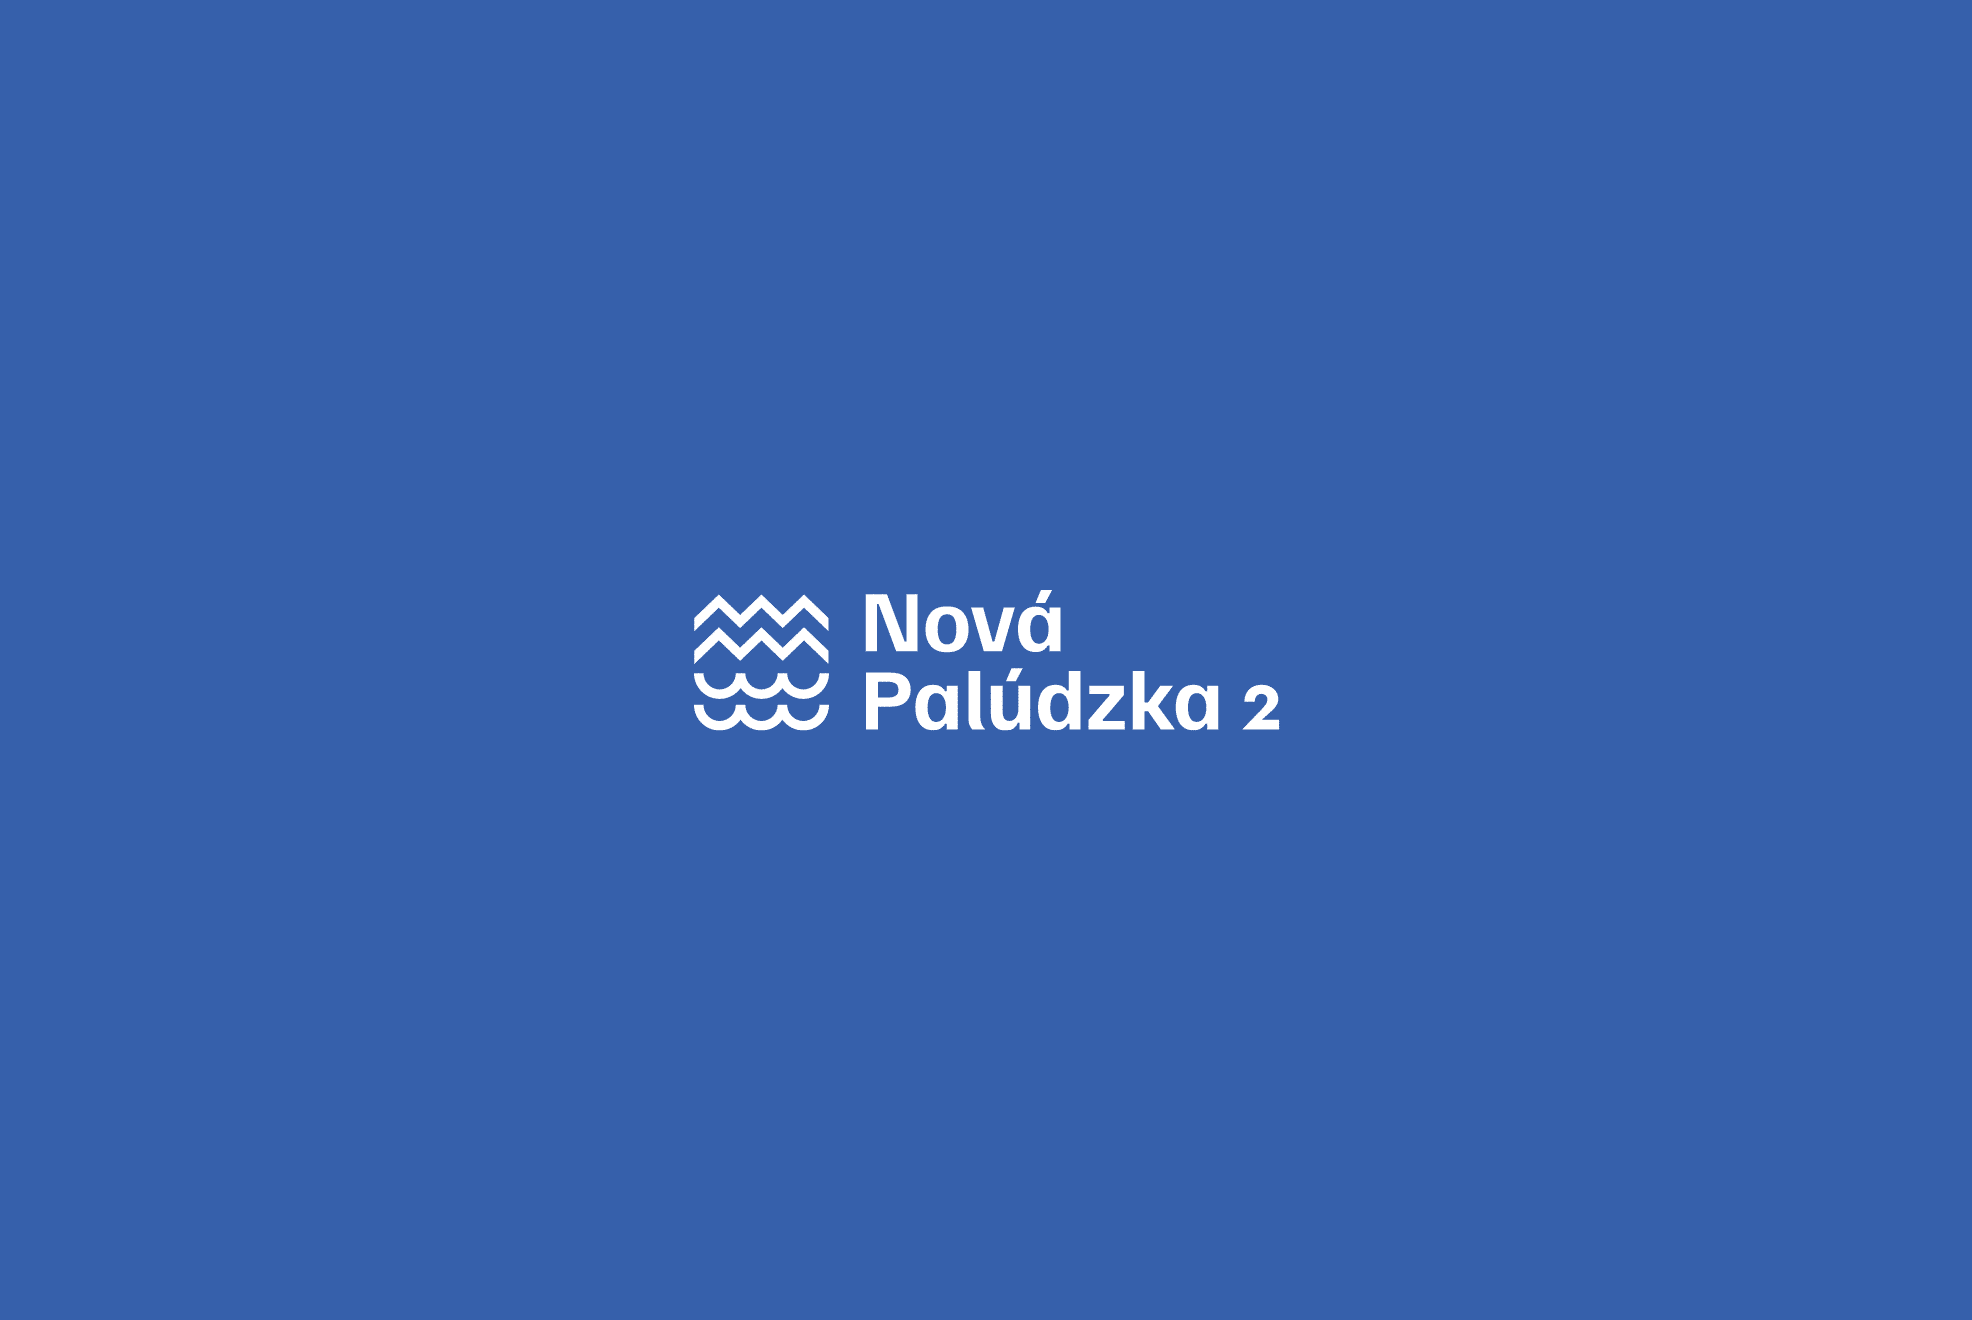 Logo / developerský projekt Nová Palúdzka II / Tvorba webu a vizuálna idenitta